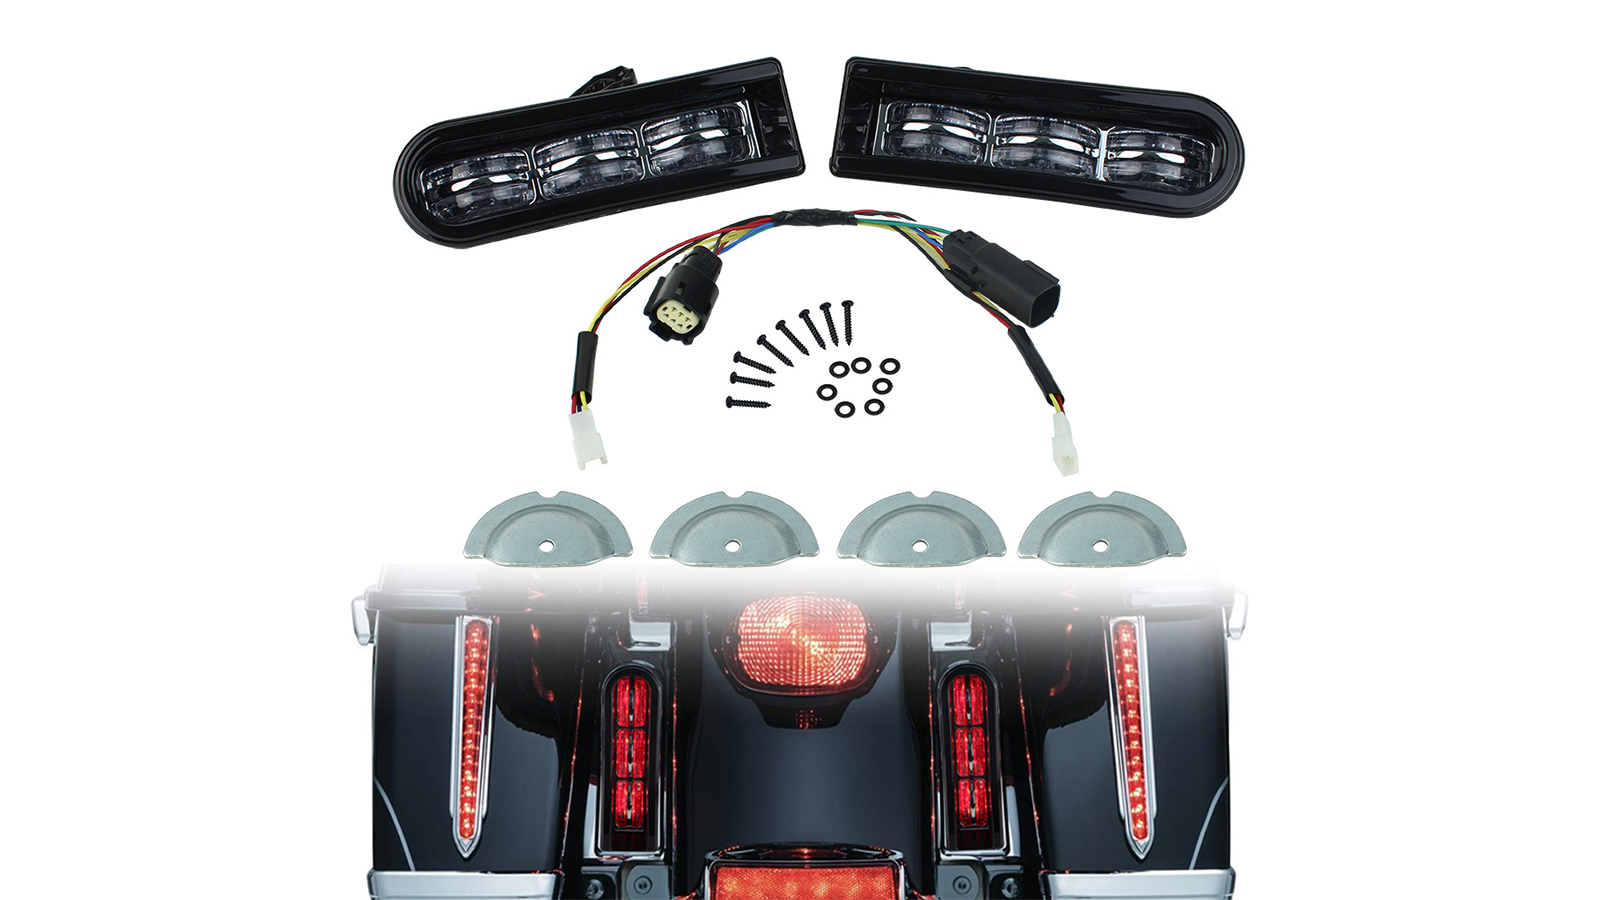 دراجة نارية الصمام الخلفية saddlebag حشو دعم الضوء الخلفي الجري ضوء للسياحة electra glide الطريق الملك 2014-2020